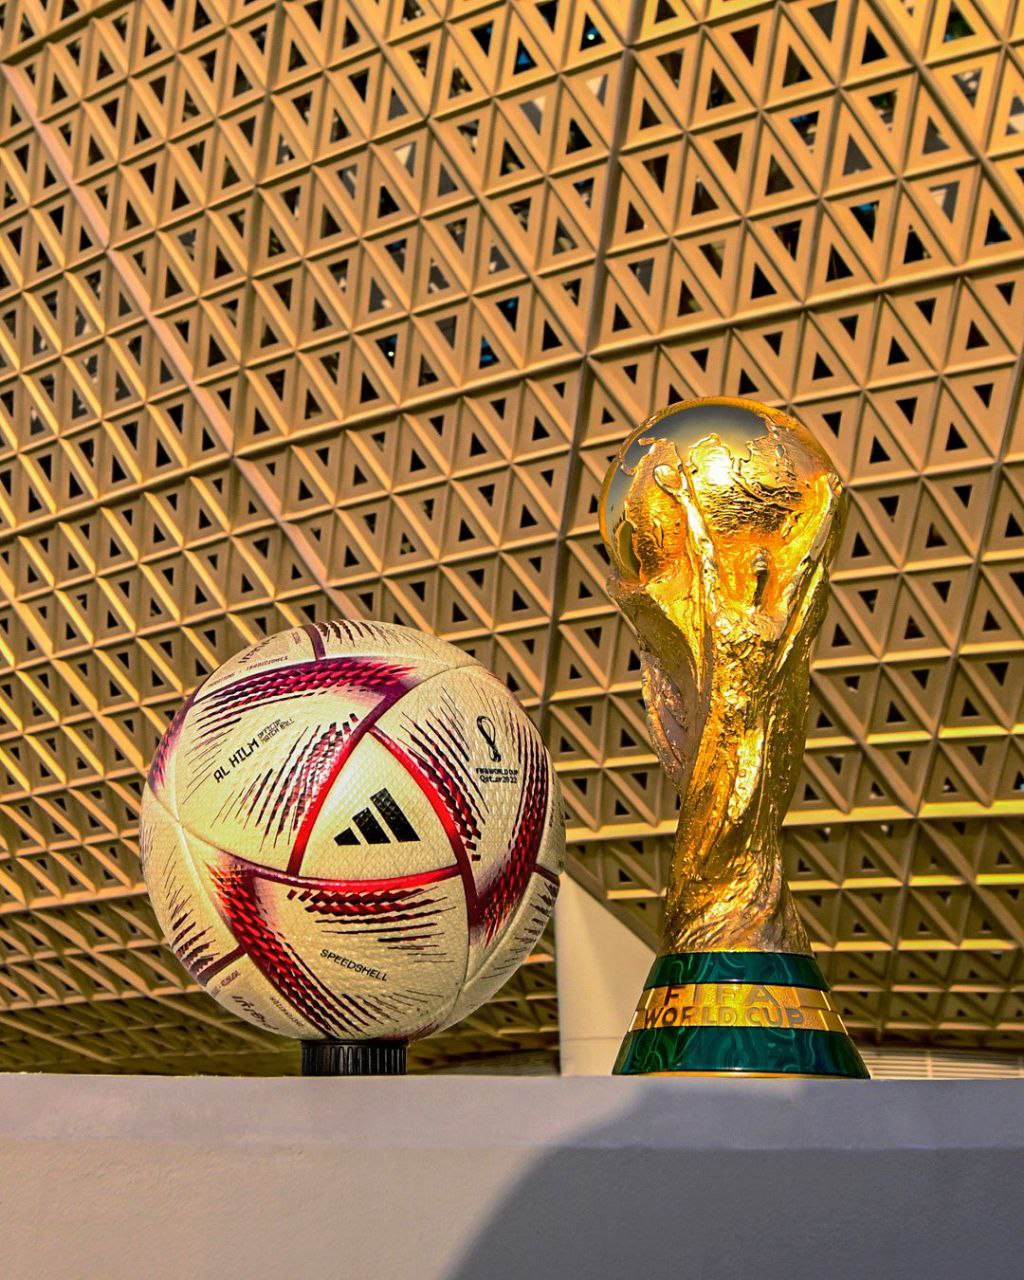 شاهد الكرة الرسمية الجديدة لنصف نهائي كأس العالم .. وماذا أطلق عليها ؟